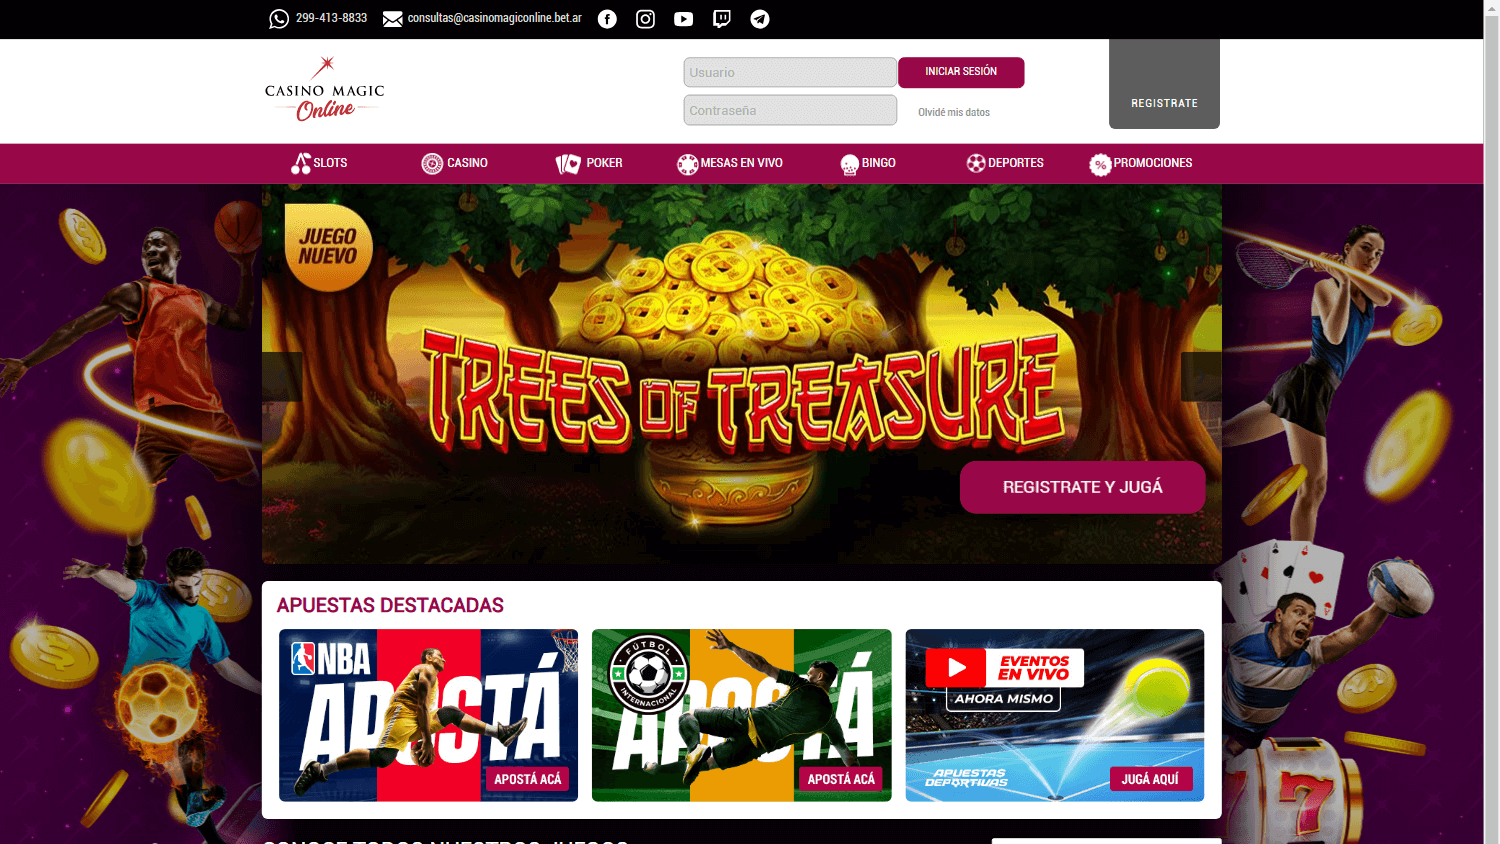 casino_magic_online_homepage_desktop